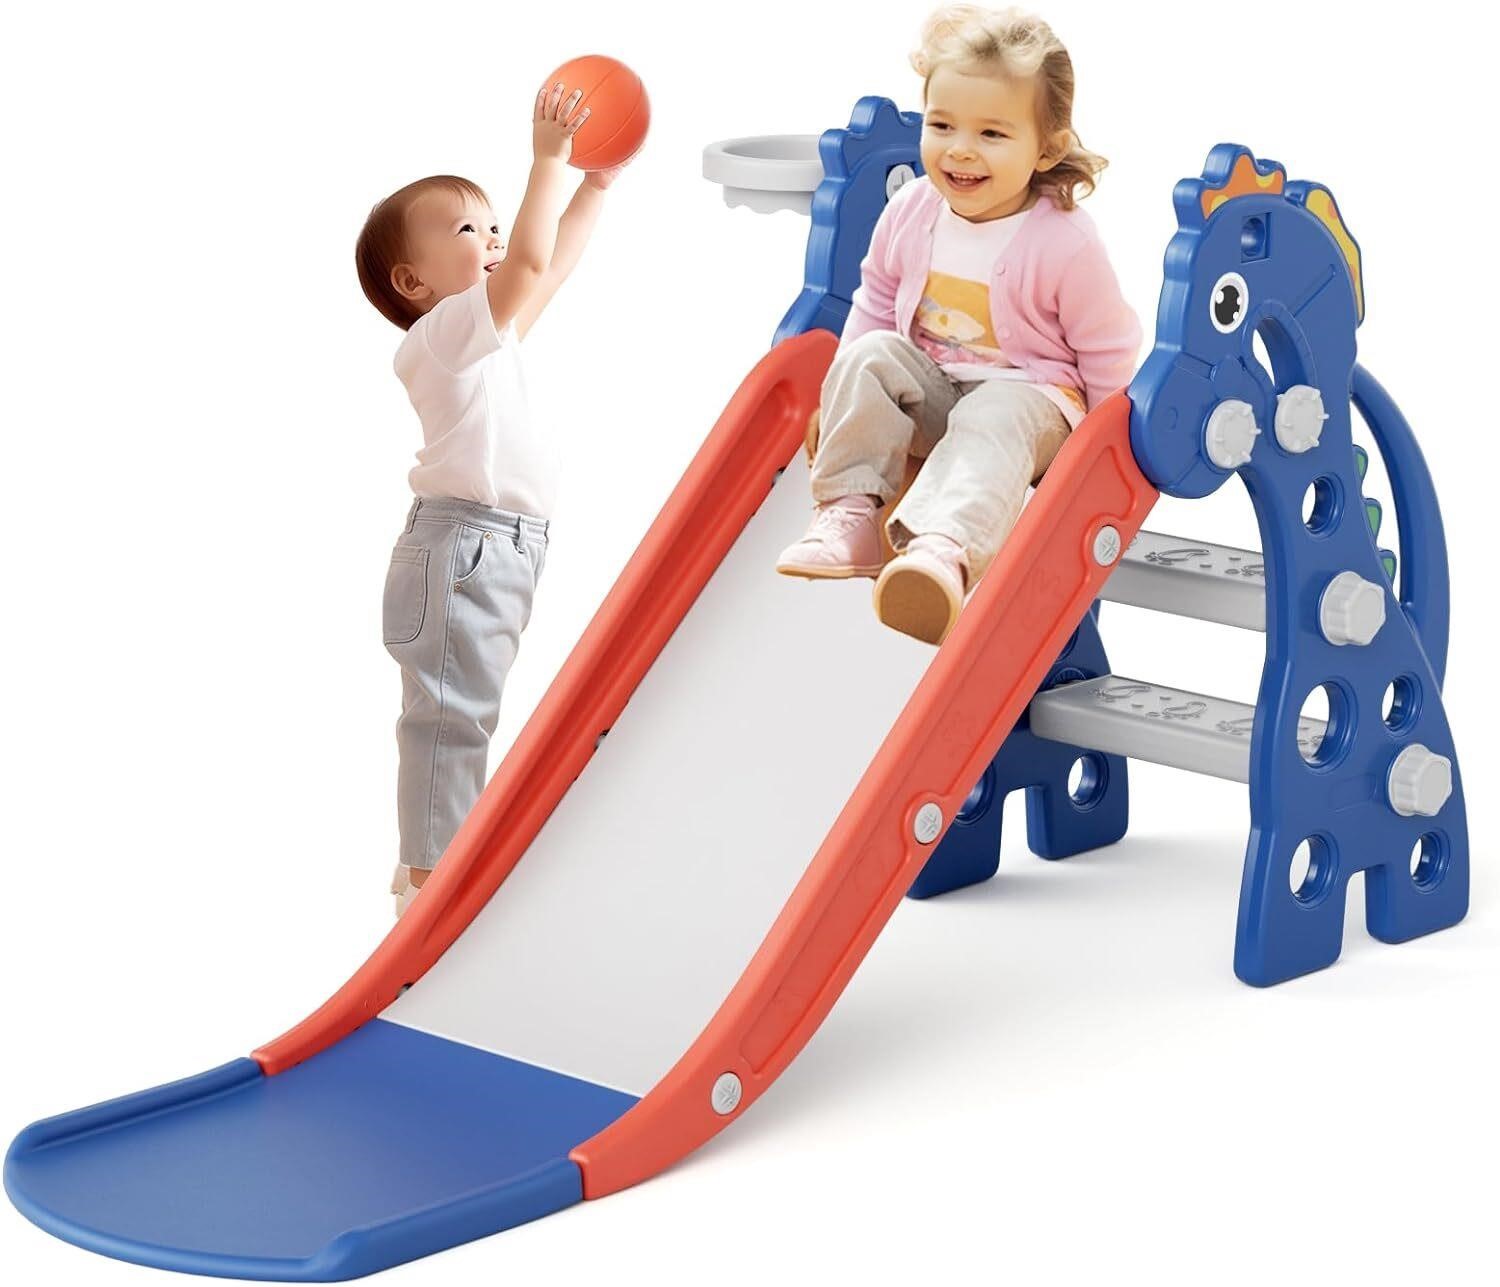 67i Toddler Slide Indoor for Toddlers 1-3